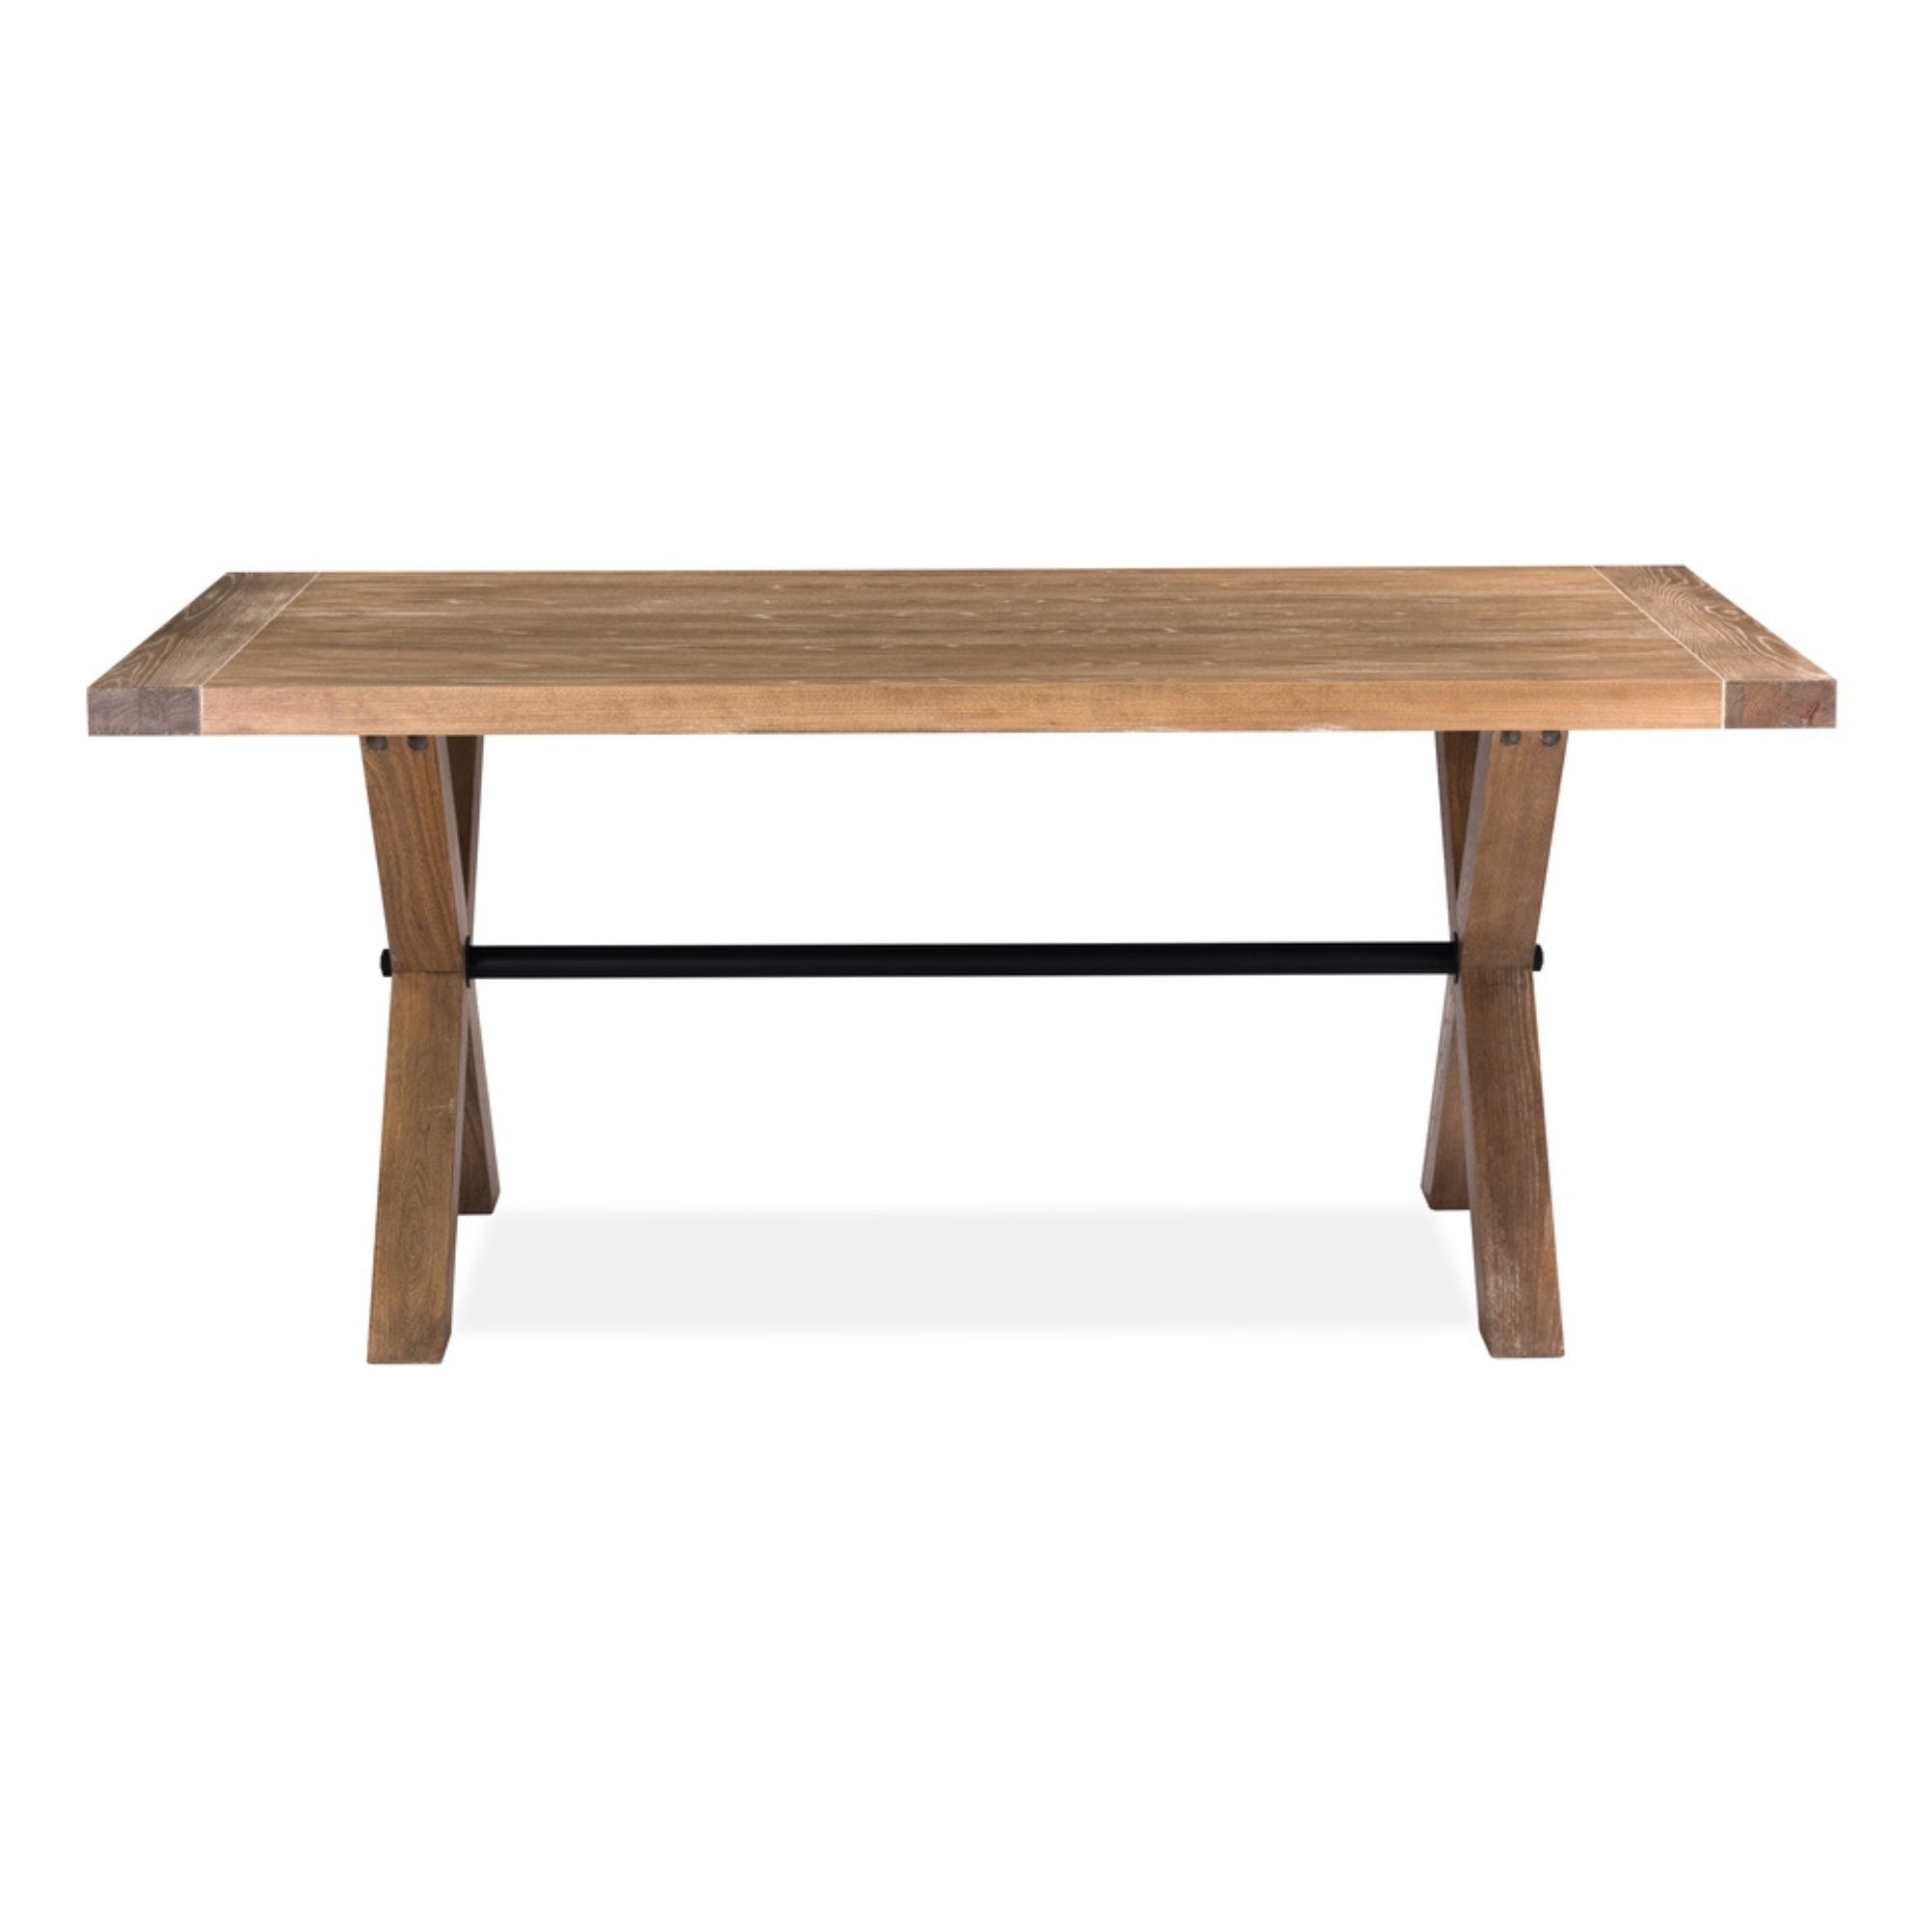 6-Seater Elm Veneer Dining Table, Rustic Natural Wood